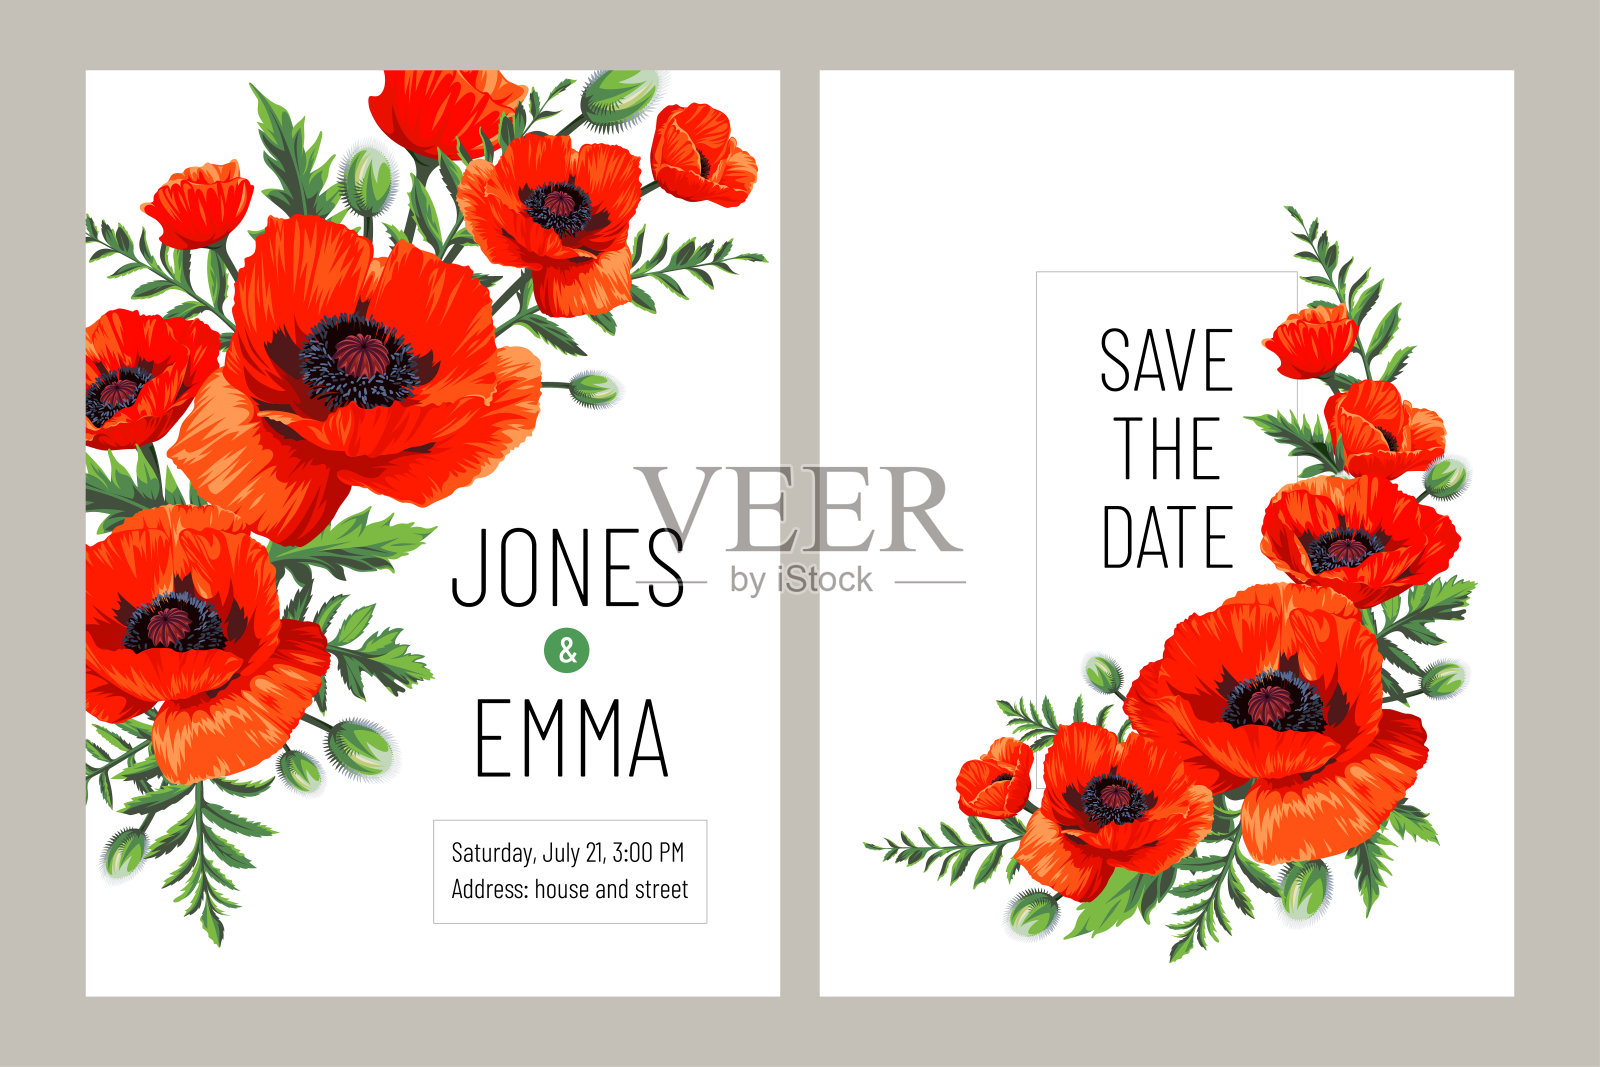 婚礼邀请卡。框架与文字和花束-红色罂粟(Papaver rhoeas)孤立在白色背景。设计模板素材